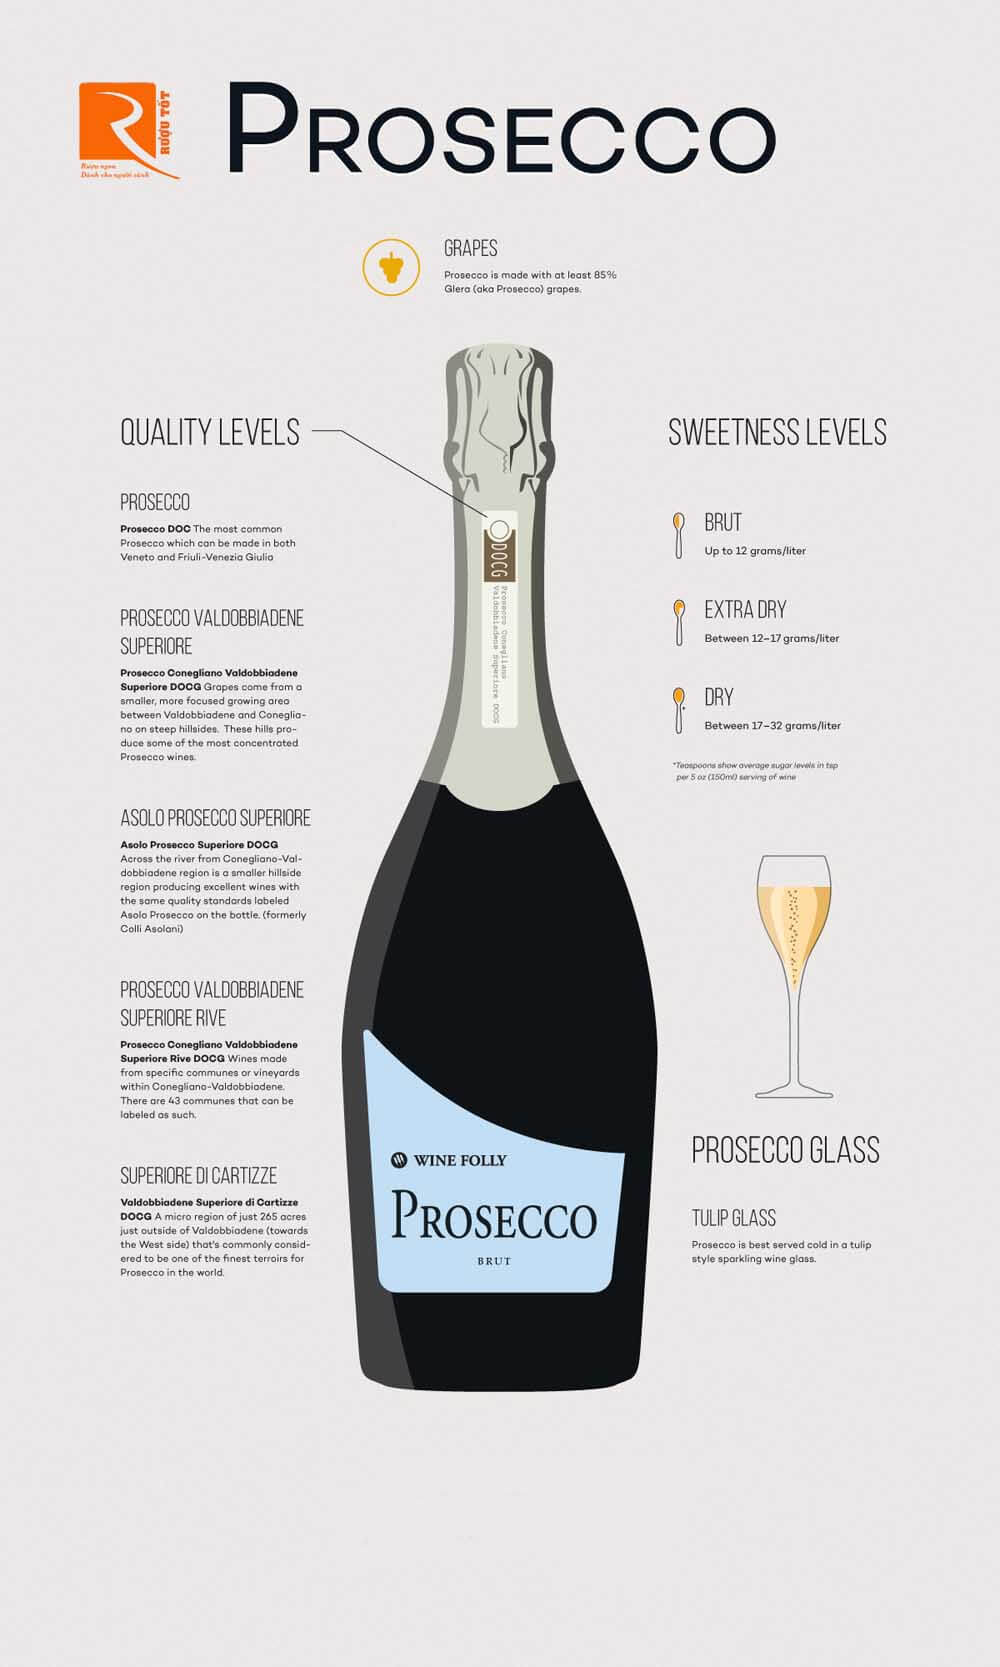 Prosecco là một loại rượu vang sủi có nguồn gốc từ vùng Valdobbiadene ở Veneto, Ý.